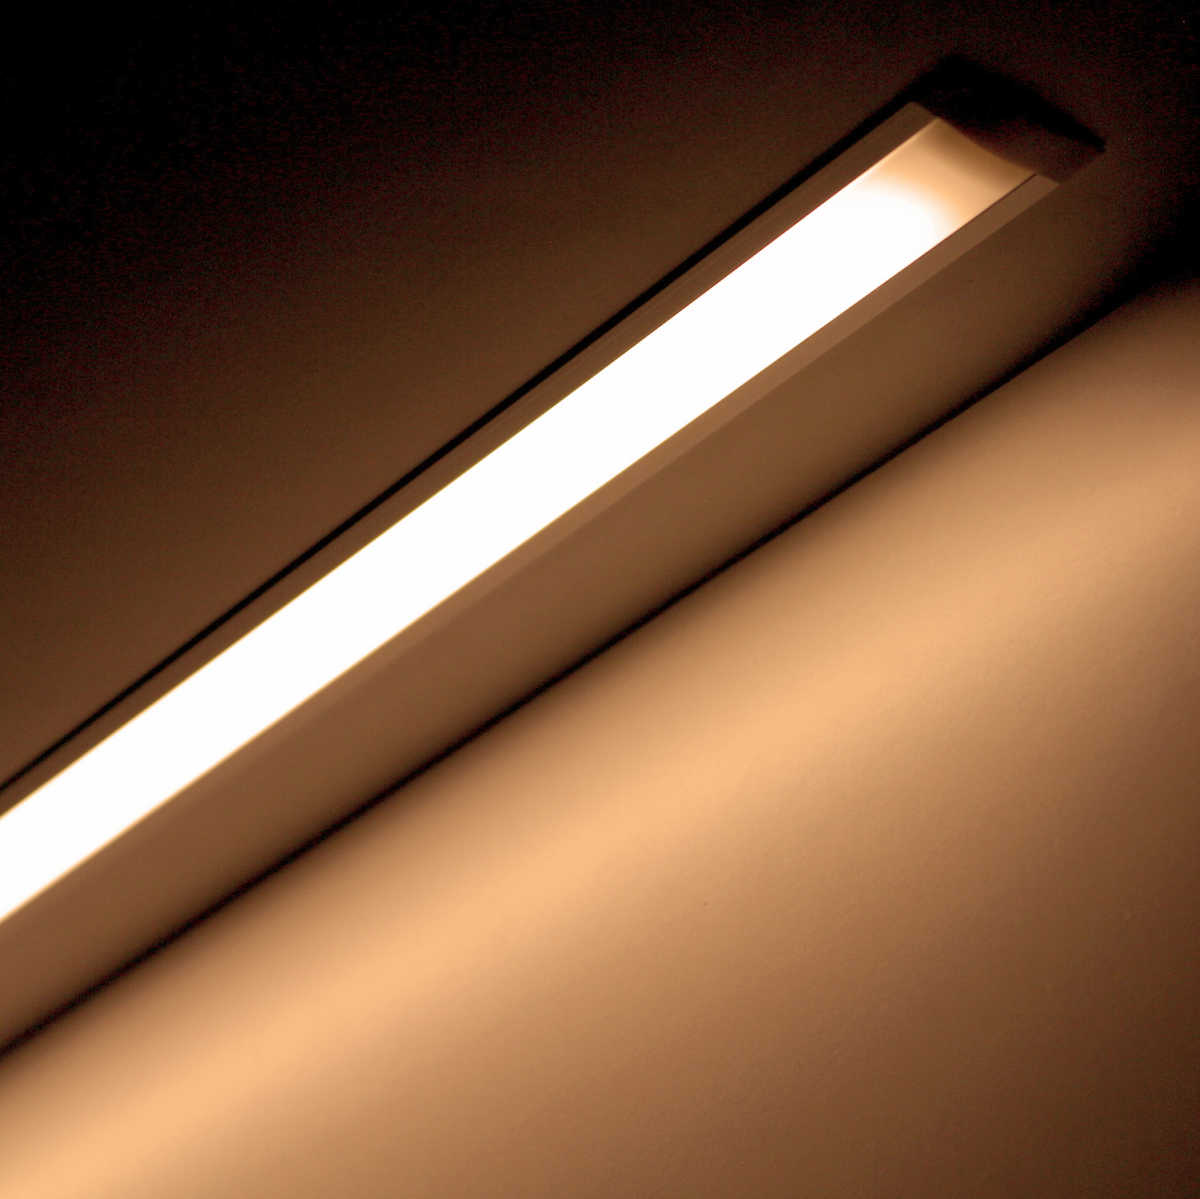 LED-Weitwinkellampen komplett wasserdicht? Bitte beachten Sie die